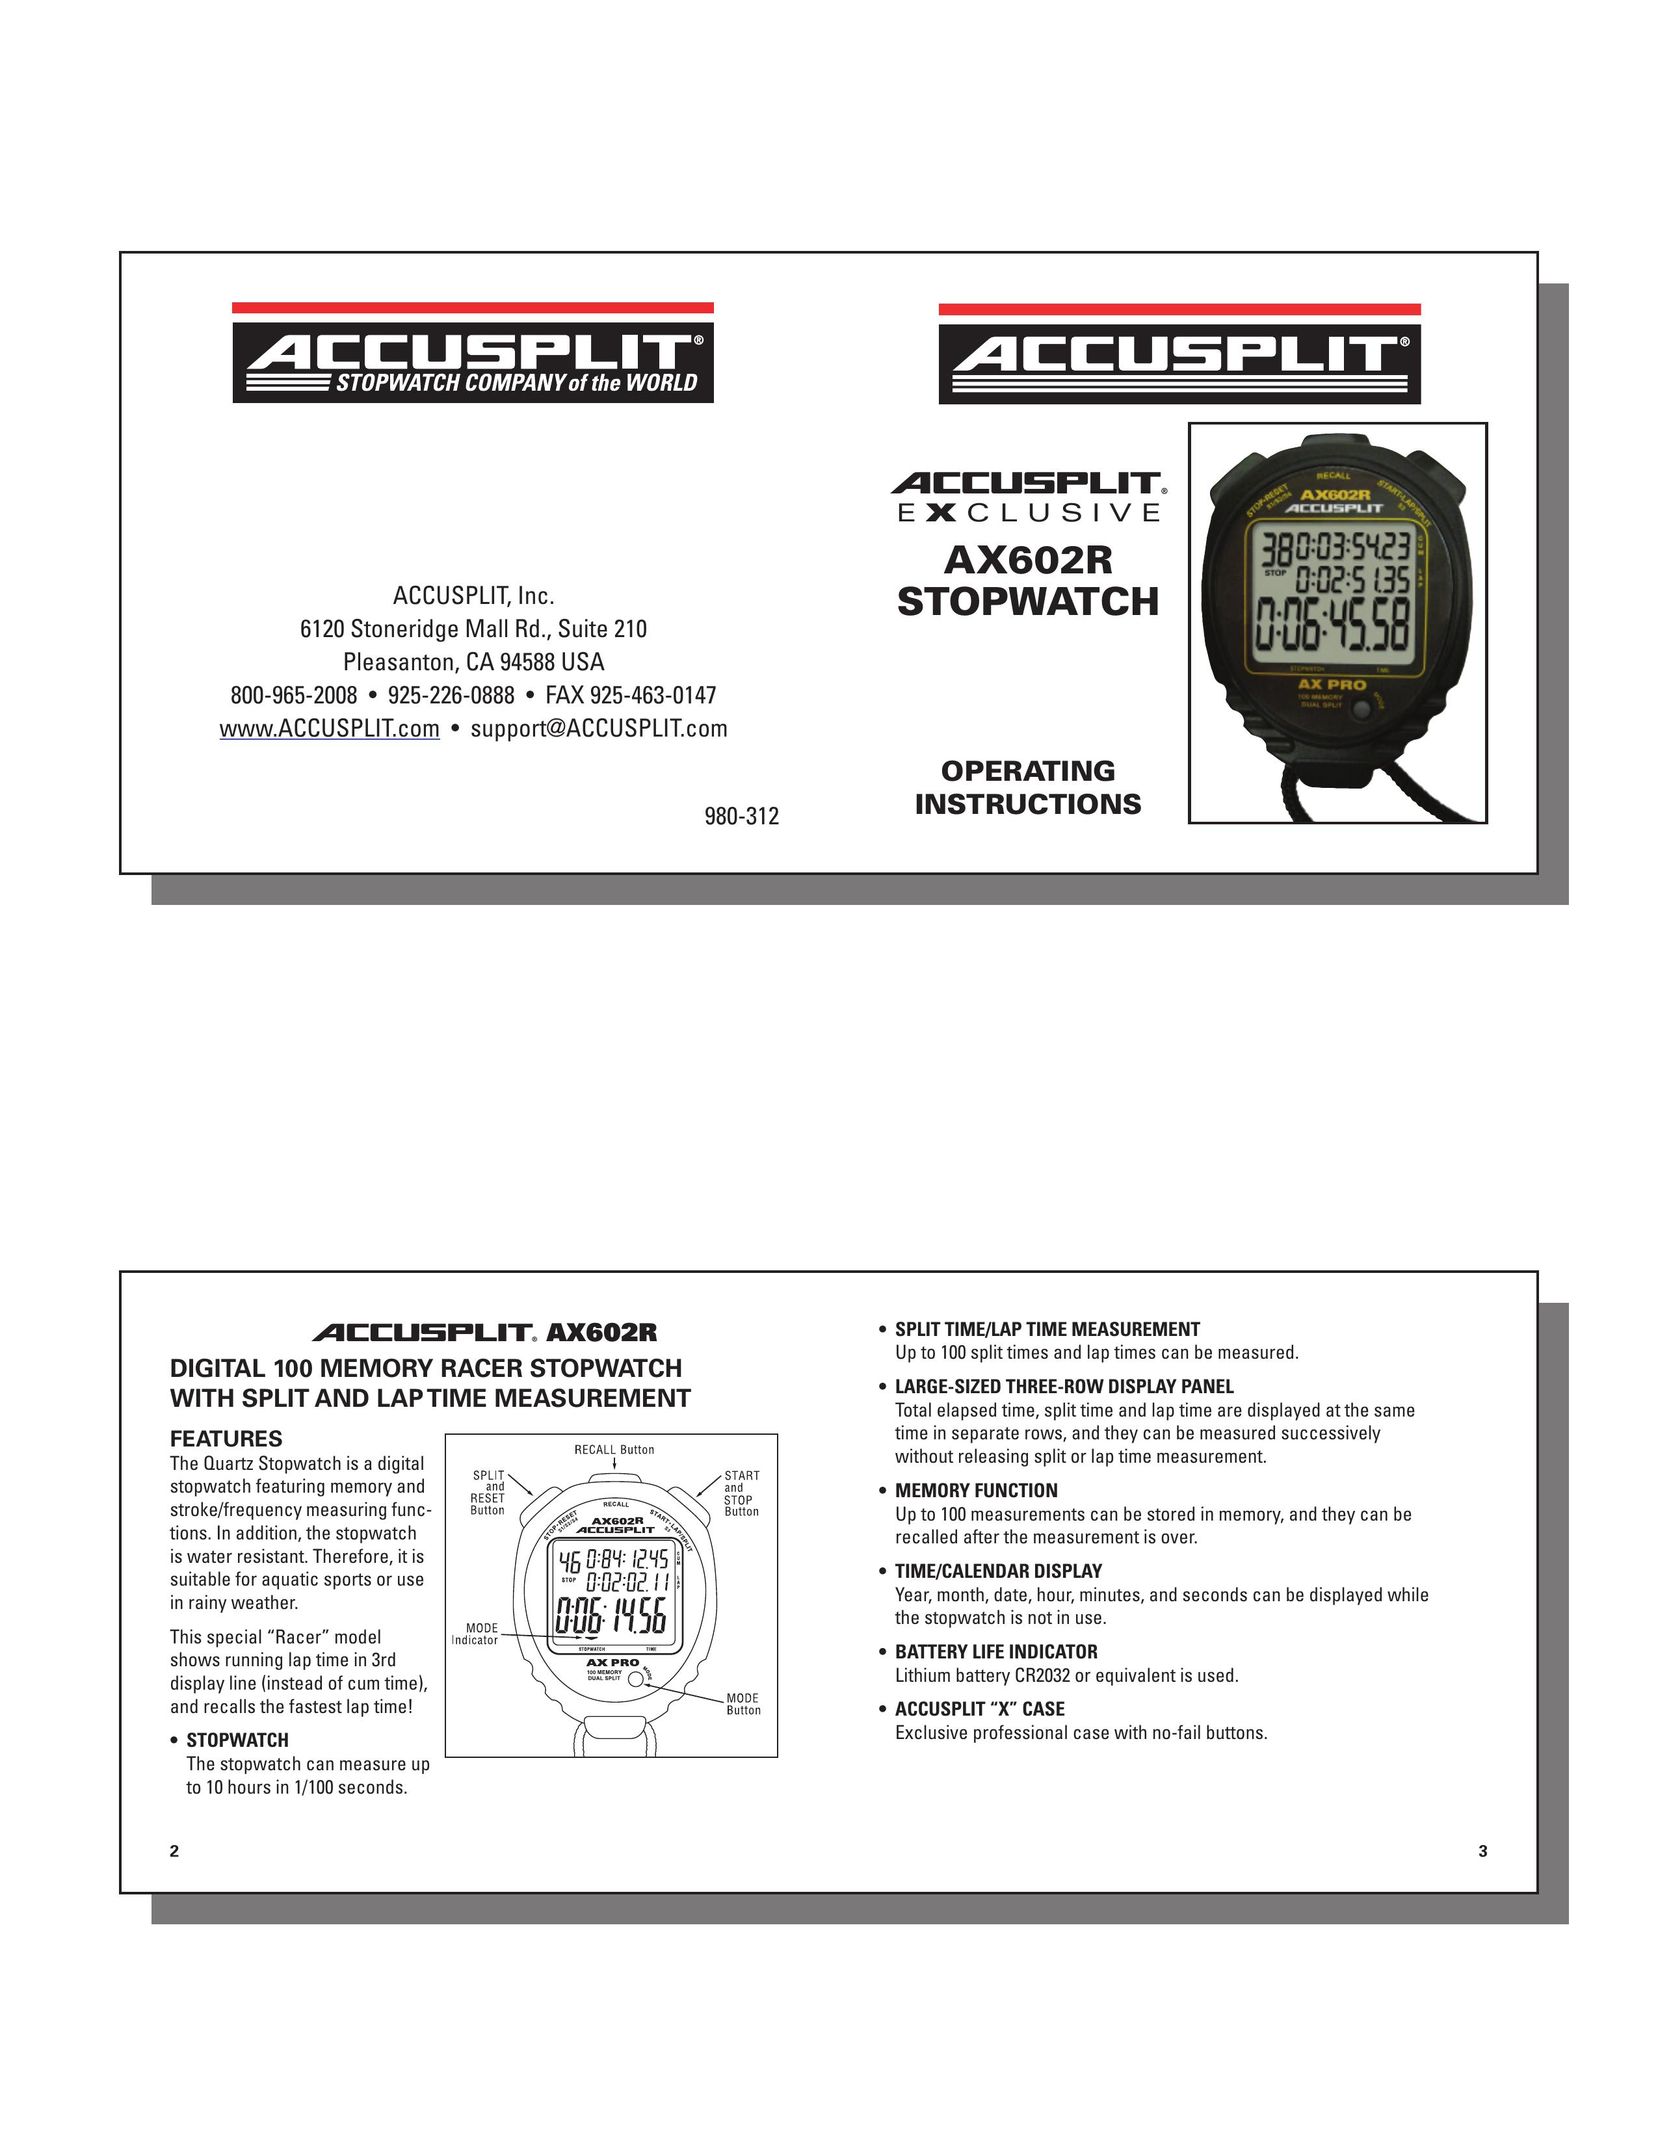 Accusplit 980-312 Heart Rate Monitor User Manual